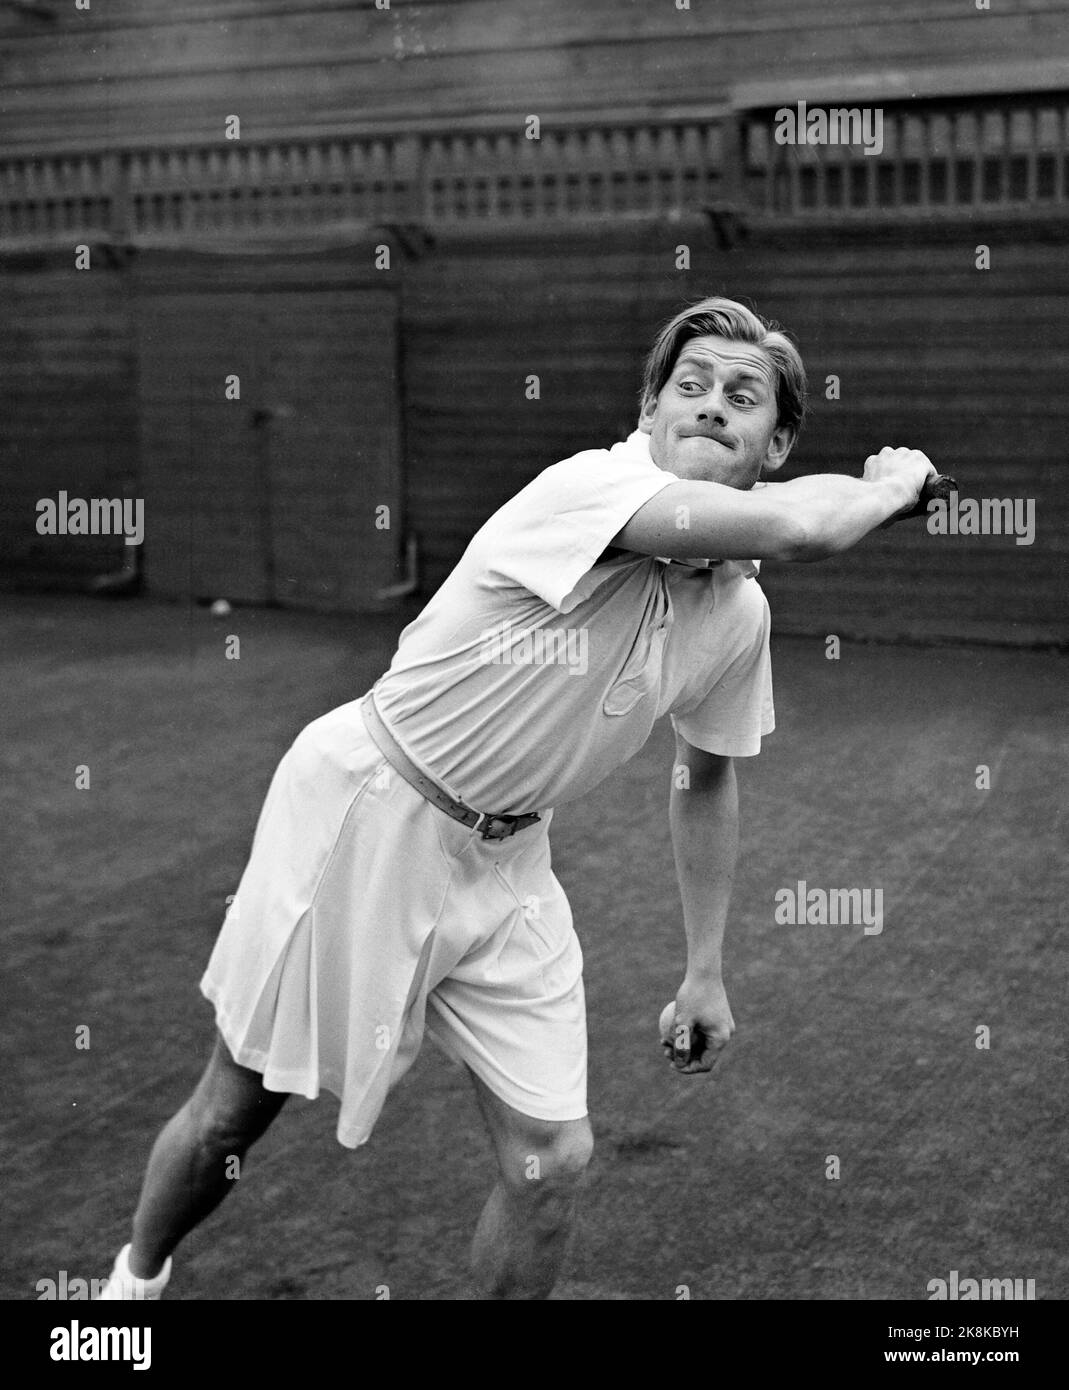 Oslo 19490908 Schauspielerin Arve Opsahl spielt Tennis. Hier in Aktion. Foto: NTB / NTB Stockfoto